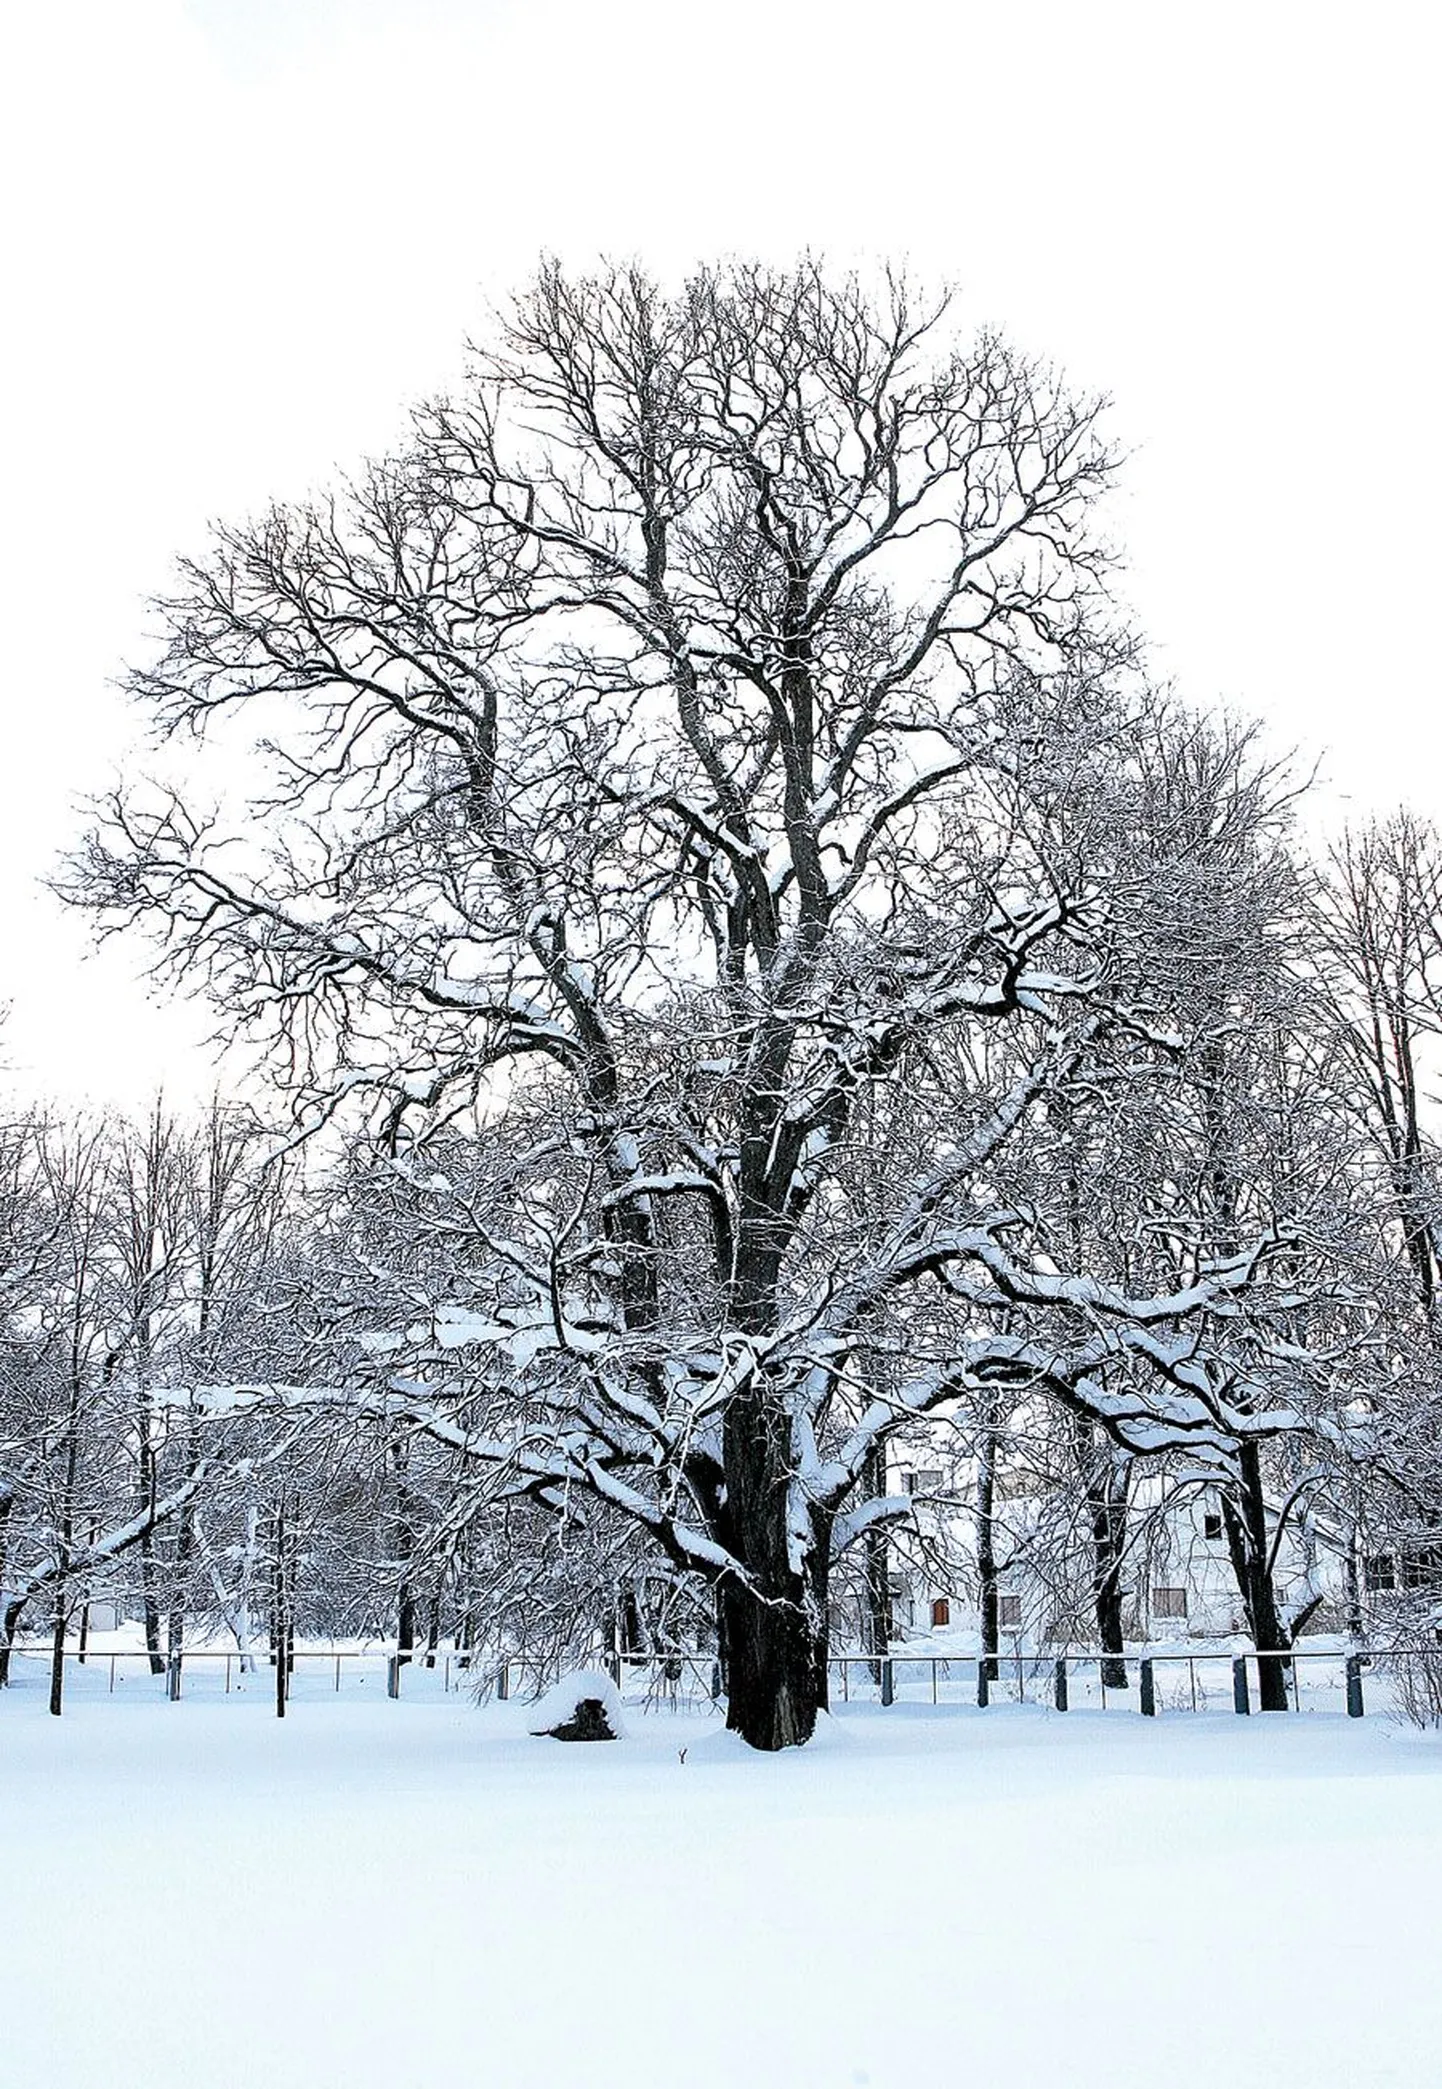 Võimas künnapuu kasvab Kaagvere erikooli õues:  ümbermõõt 440 cm ja kõrgus 24 m.